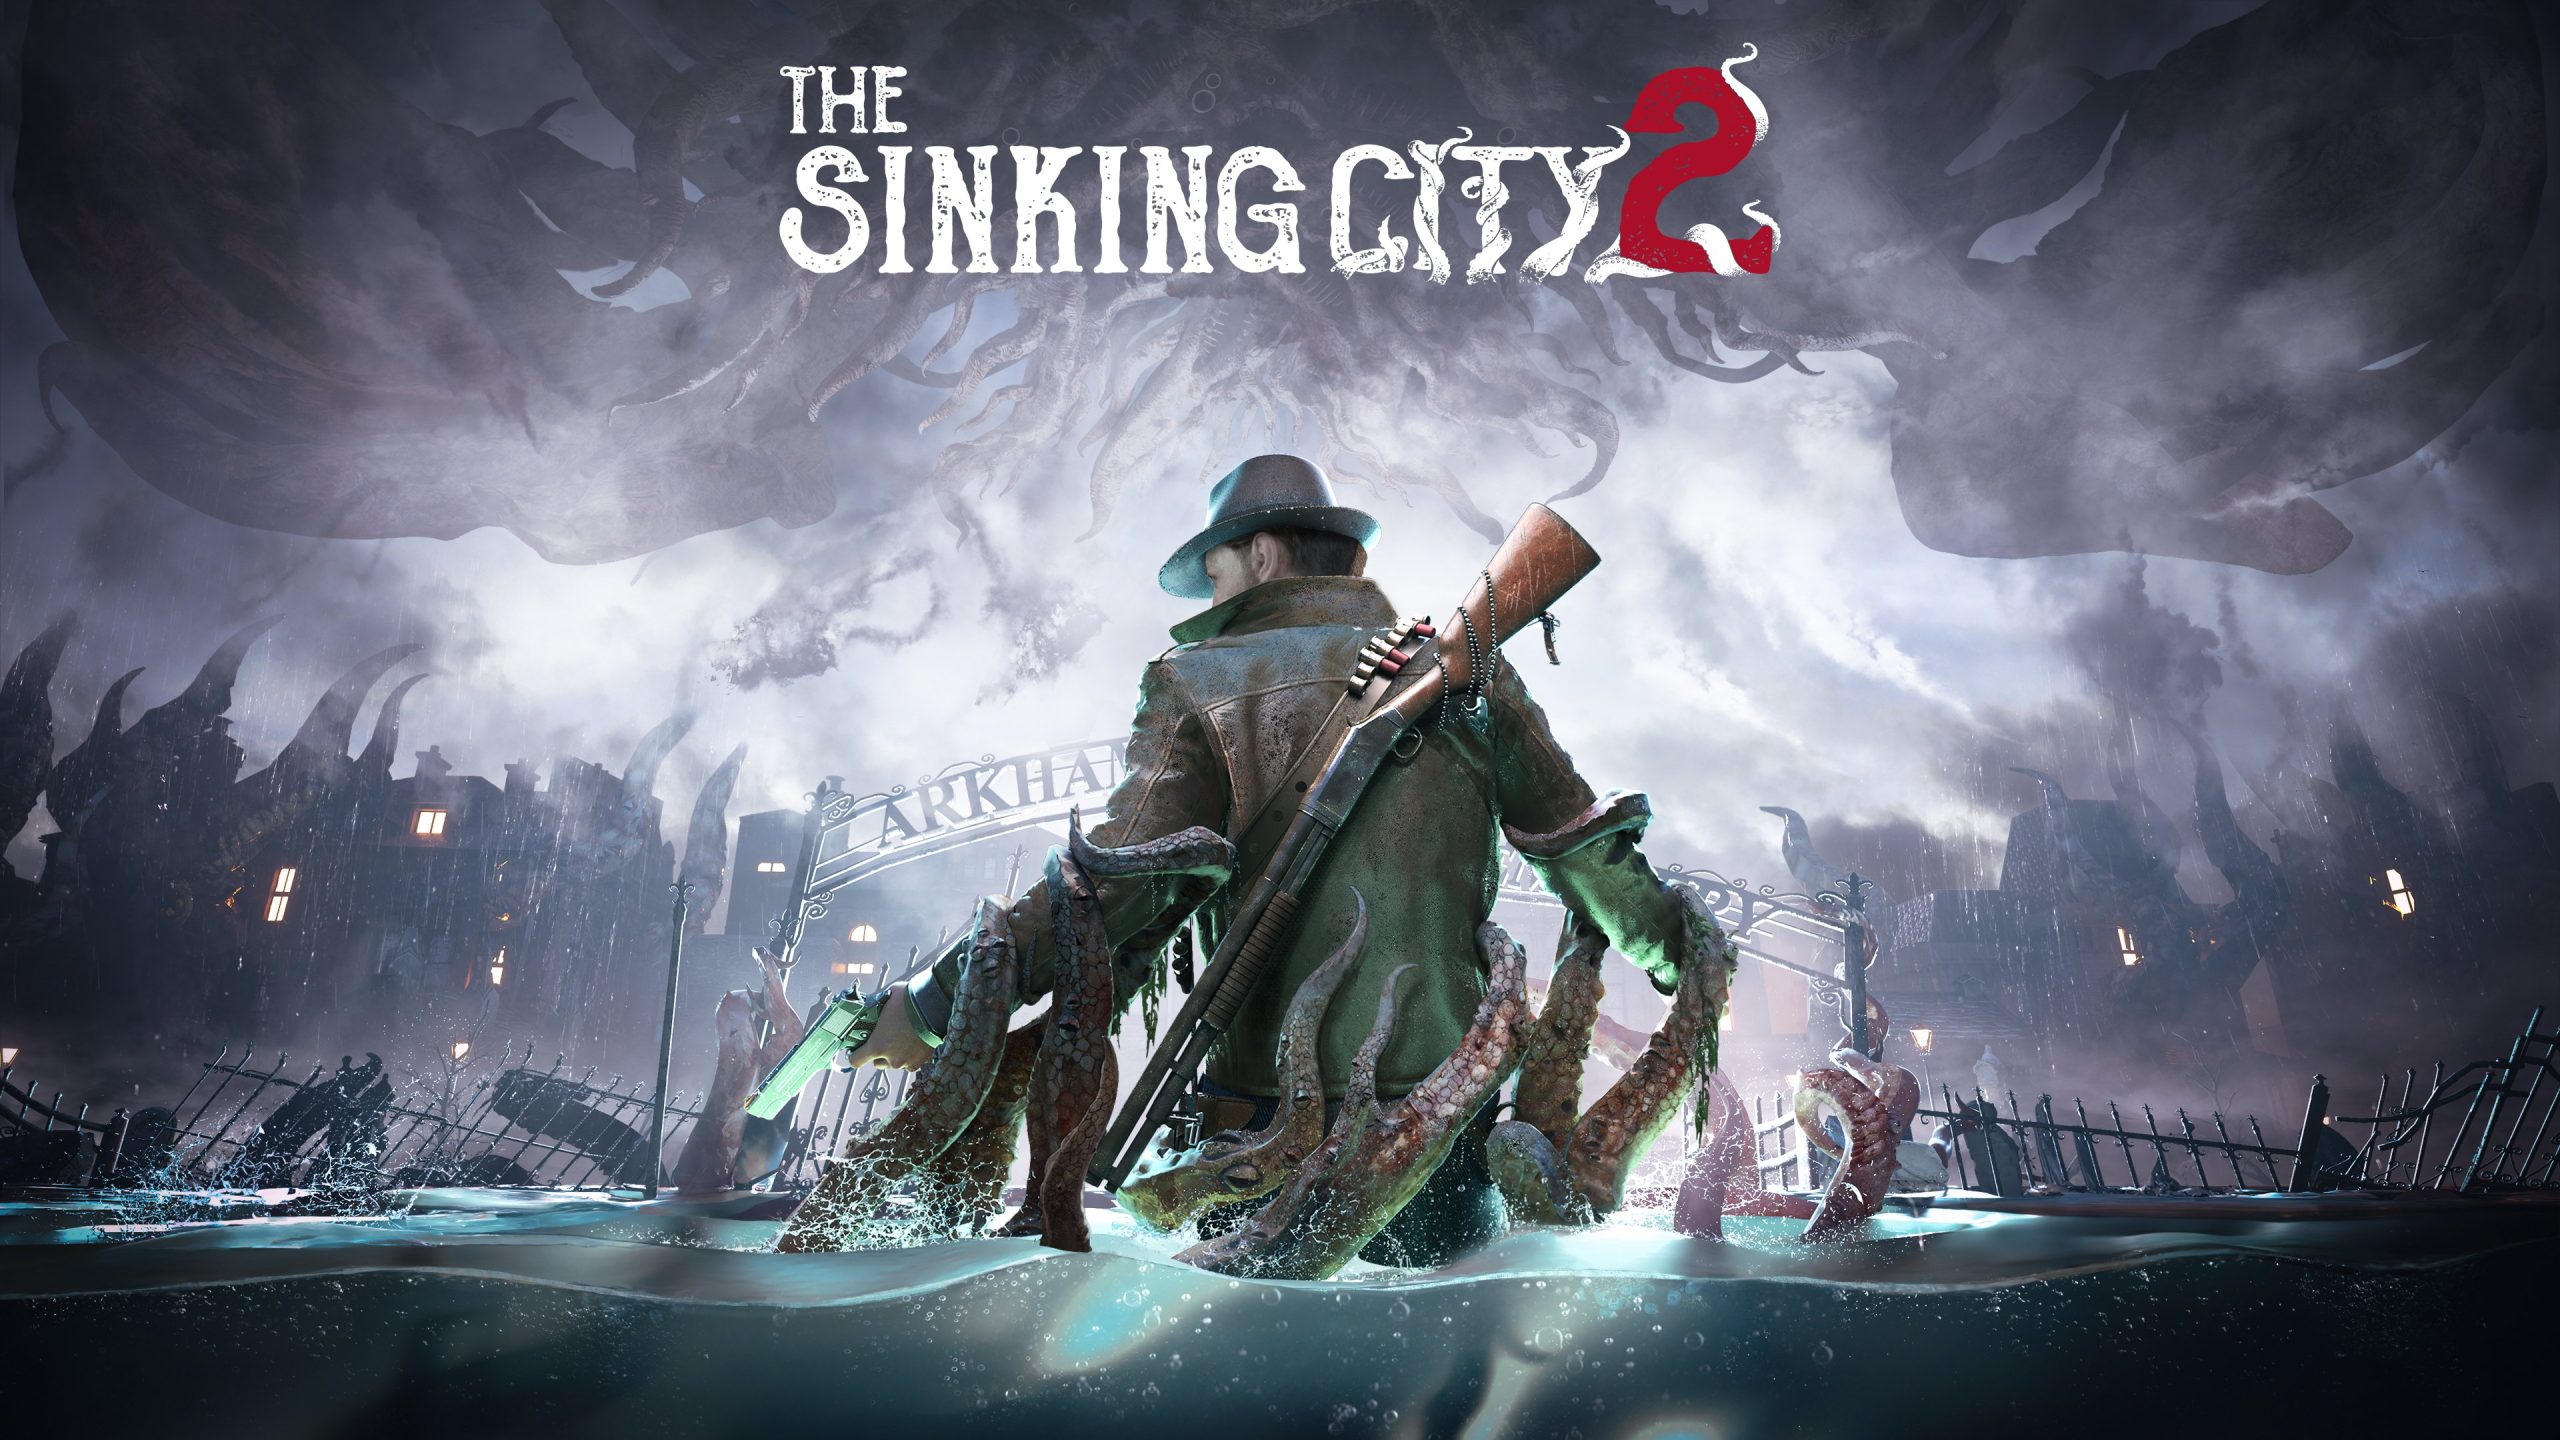 بازی The Sinking City 2 به طو رسمی معرفی شد